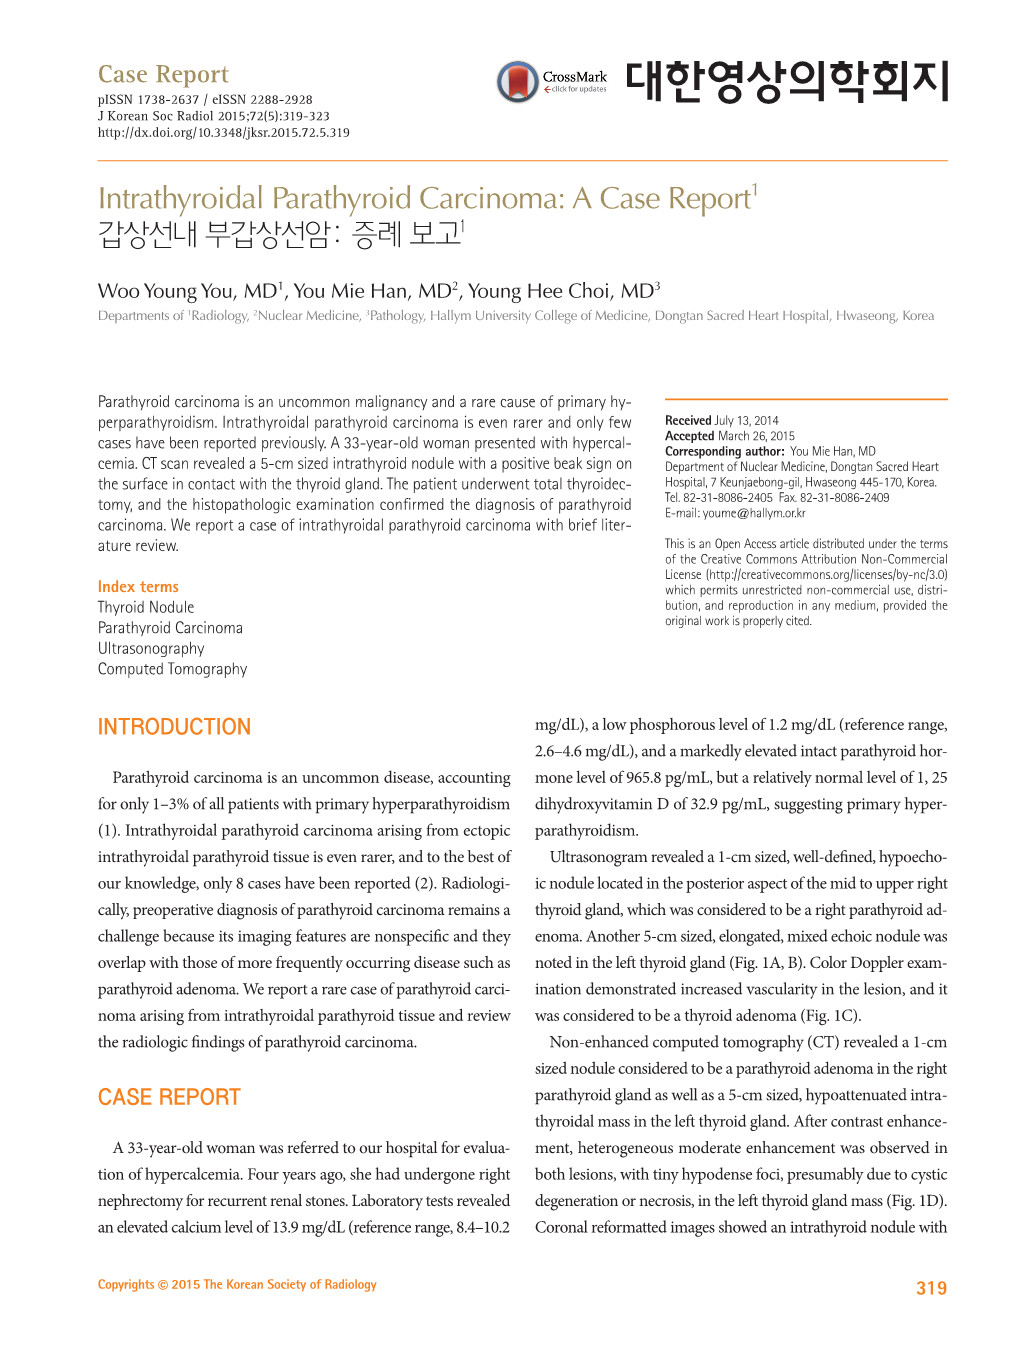 Intrathyroidal Parathyroid Carcinoma: a Case Report1 갑상선내 부갑상선암: 증례 보고1